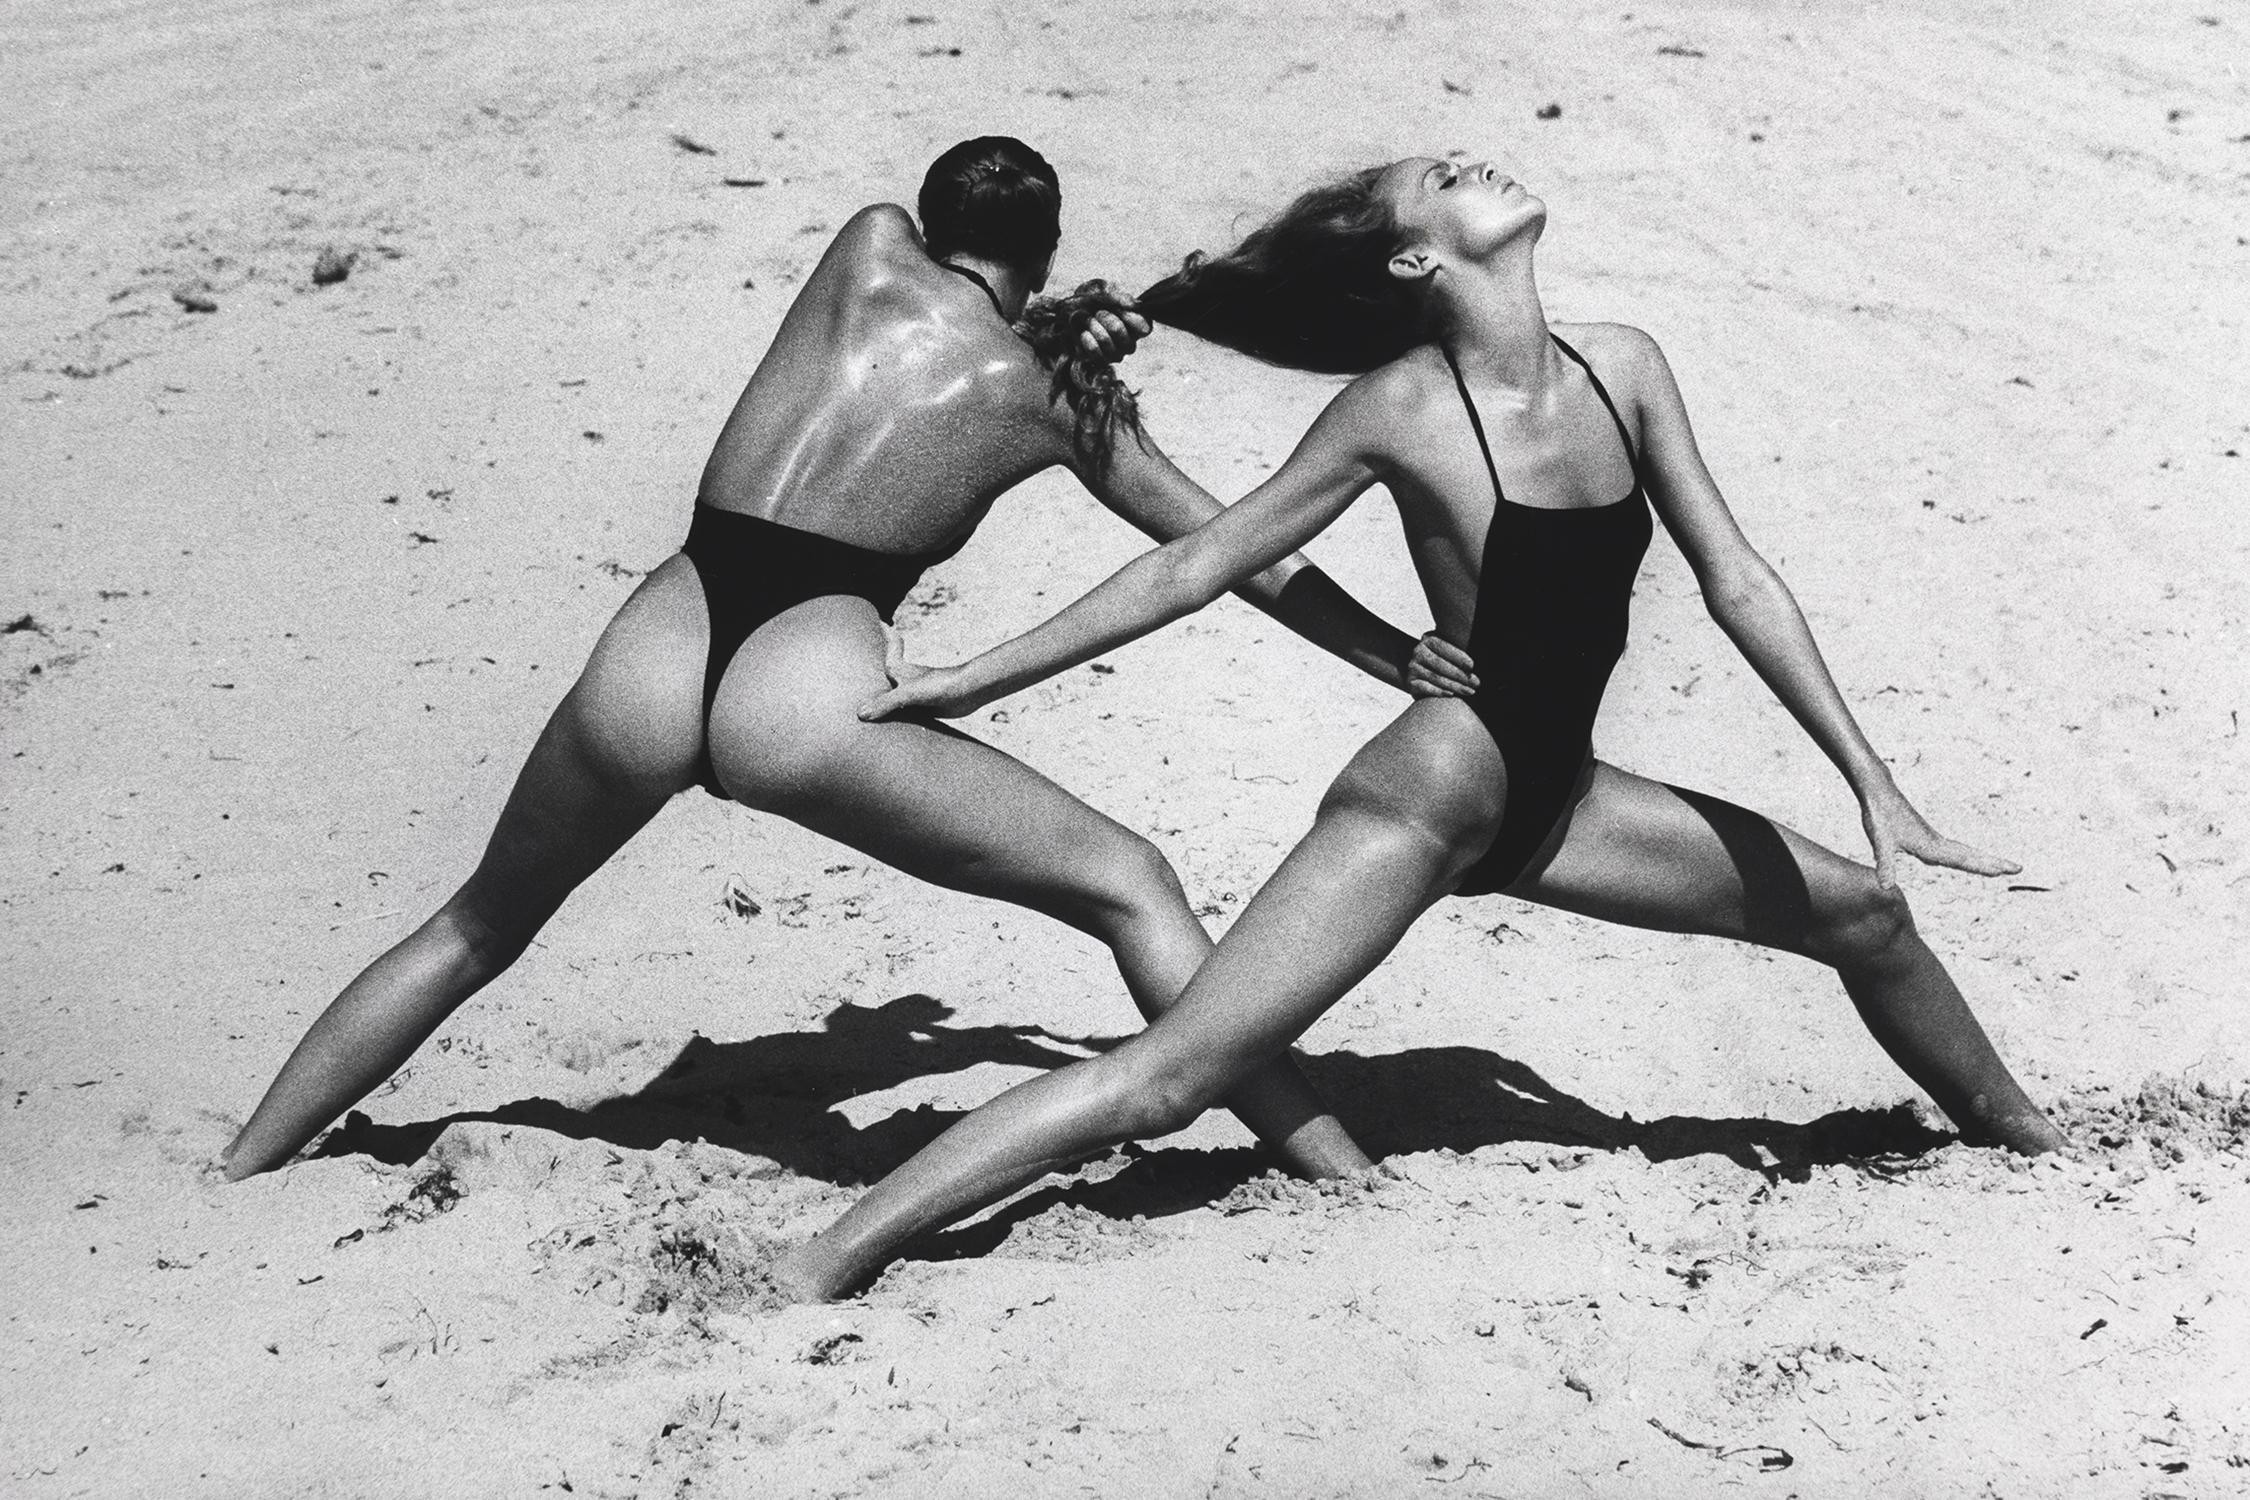 Пляжные упражнения, Майами, 1975. Фотограф Хельмут Ньютон